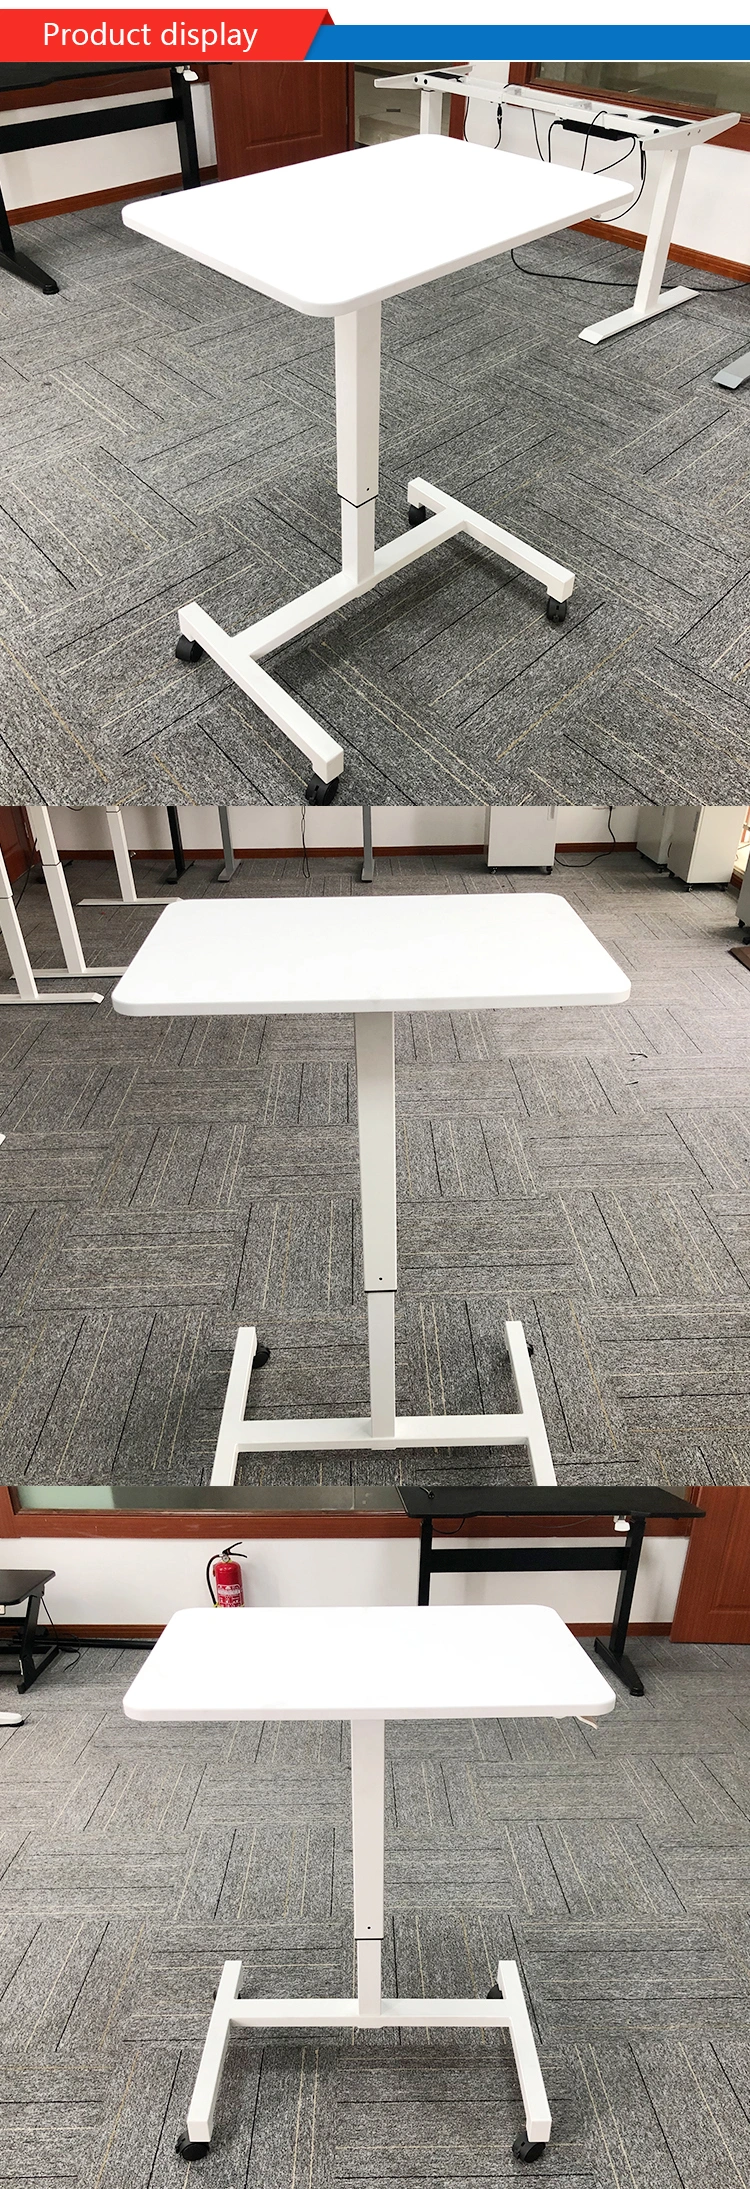 Sit-Stand Mobile Laptop Standing Desk Gas Spring Riser Height Adjustable Desk